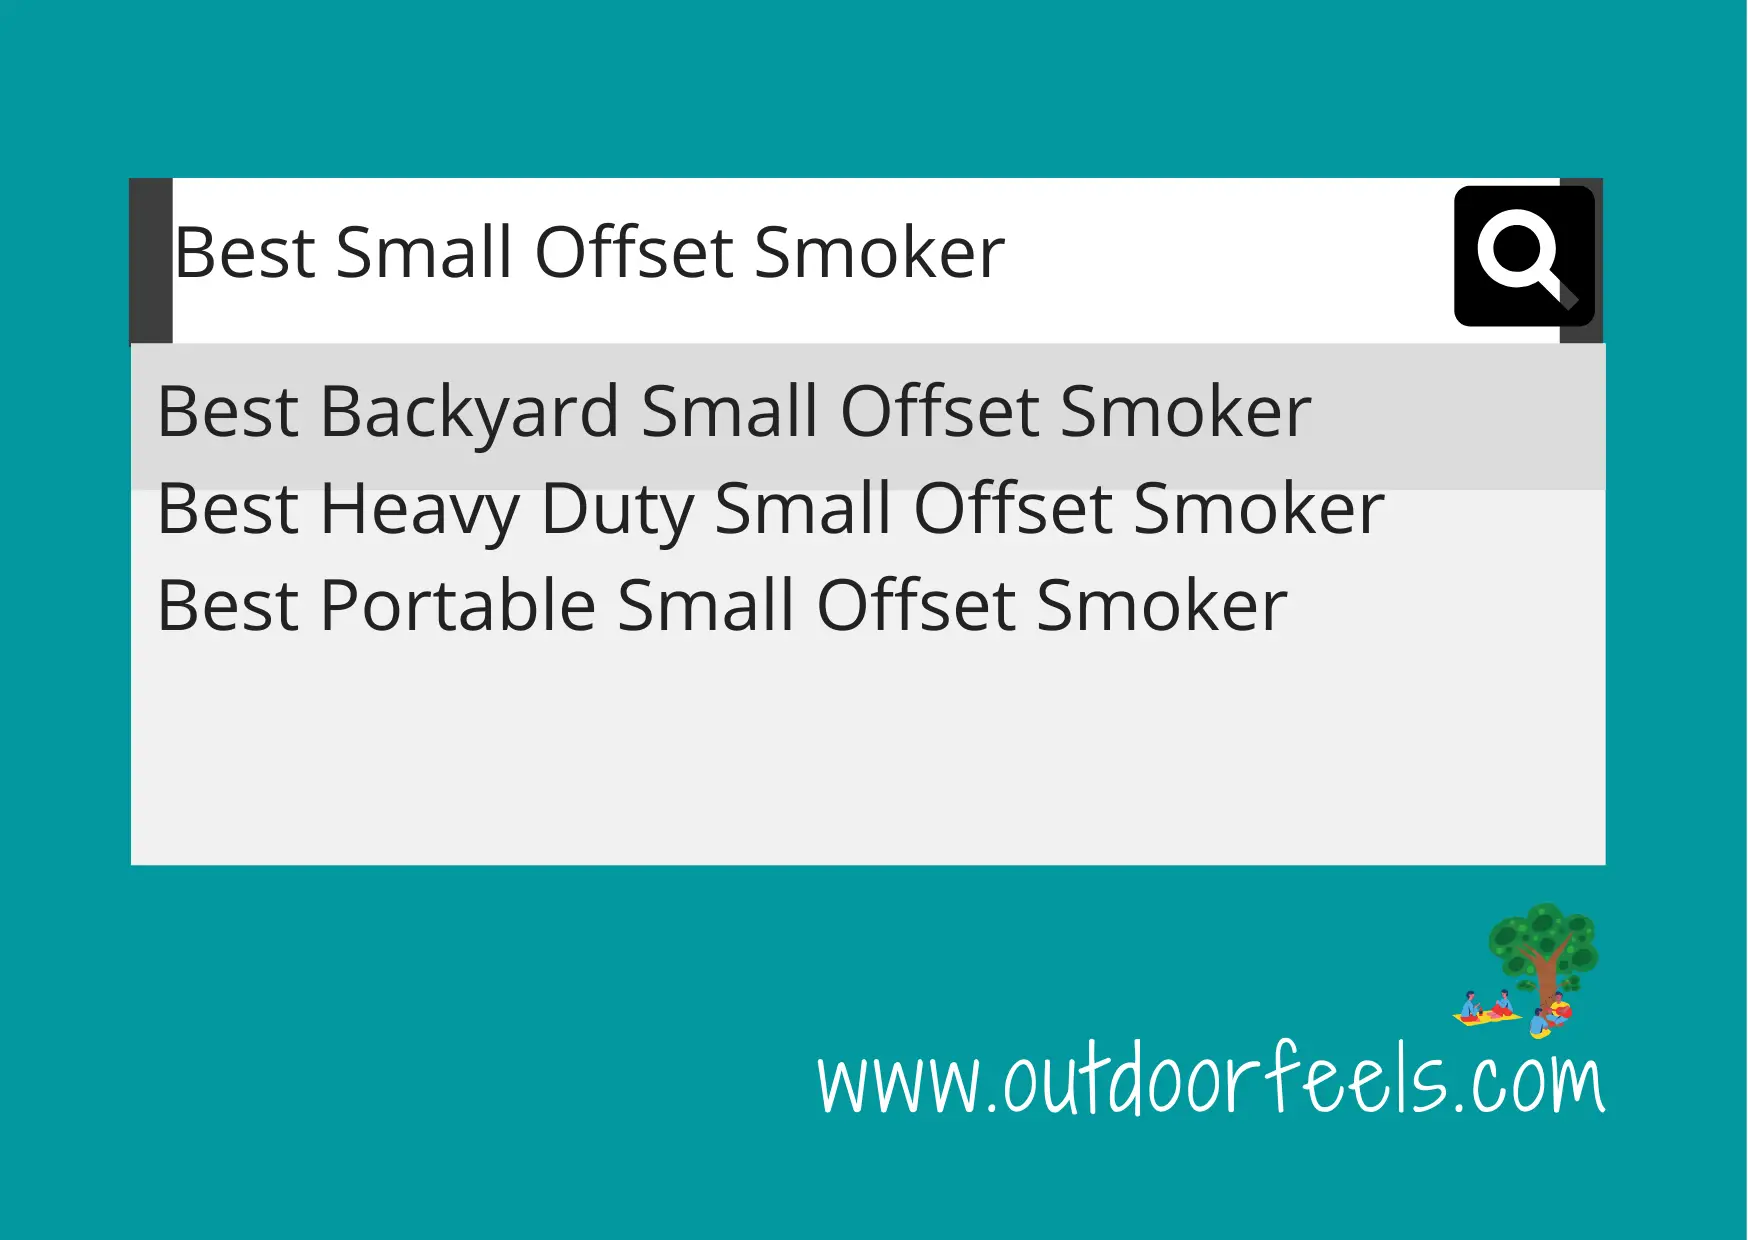 Best Small Offset Smoker